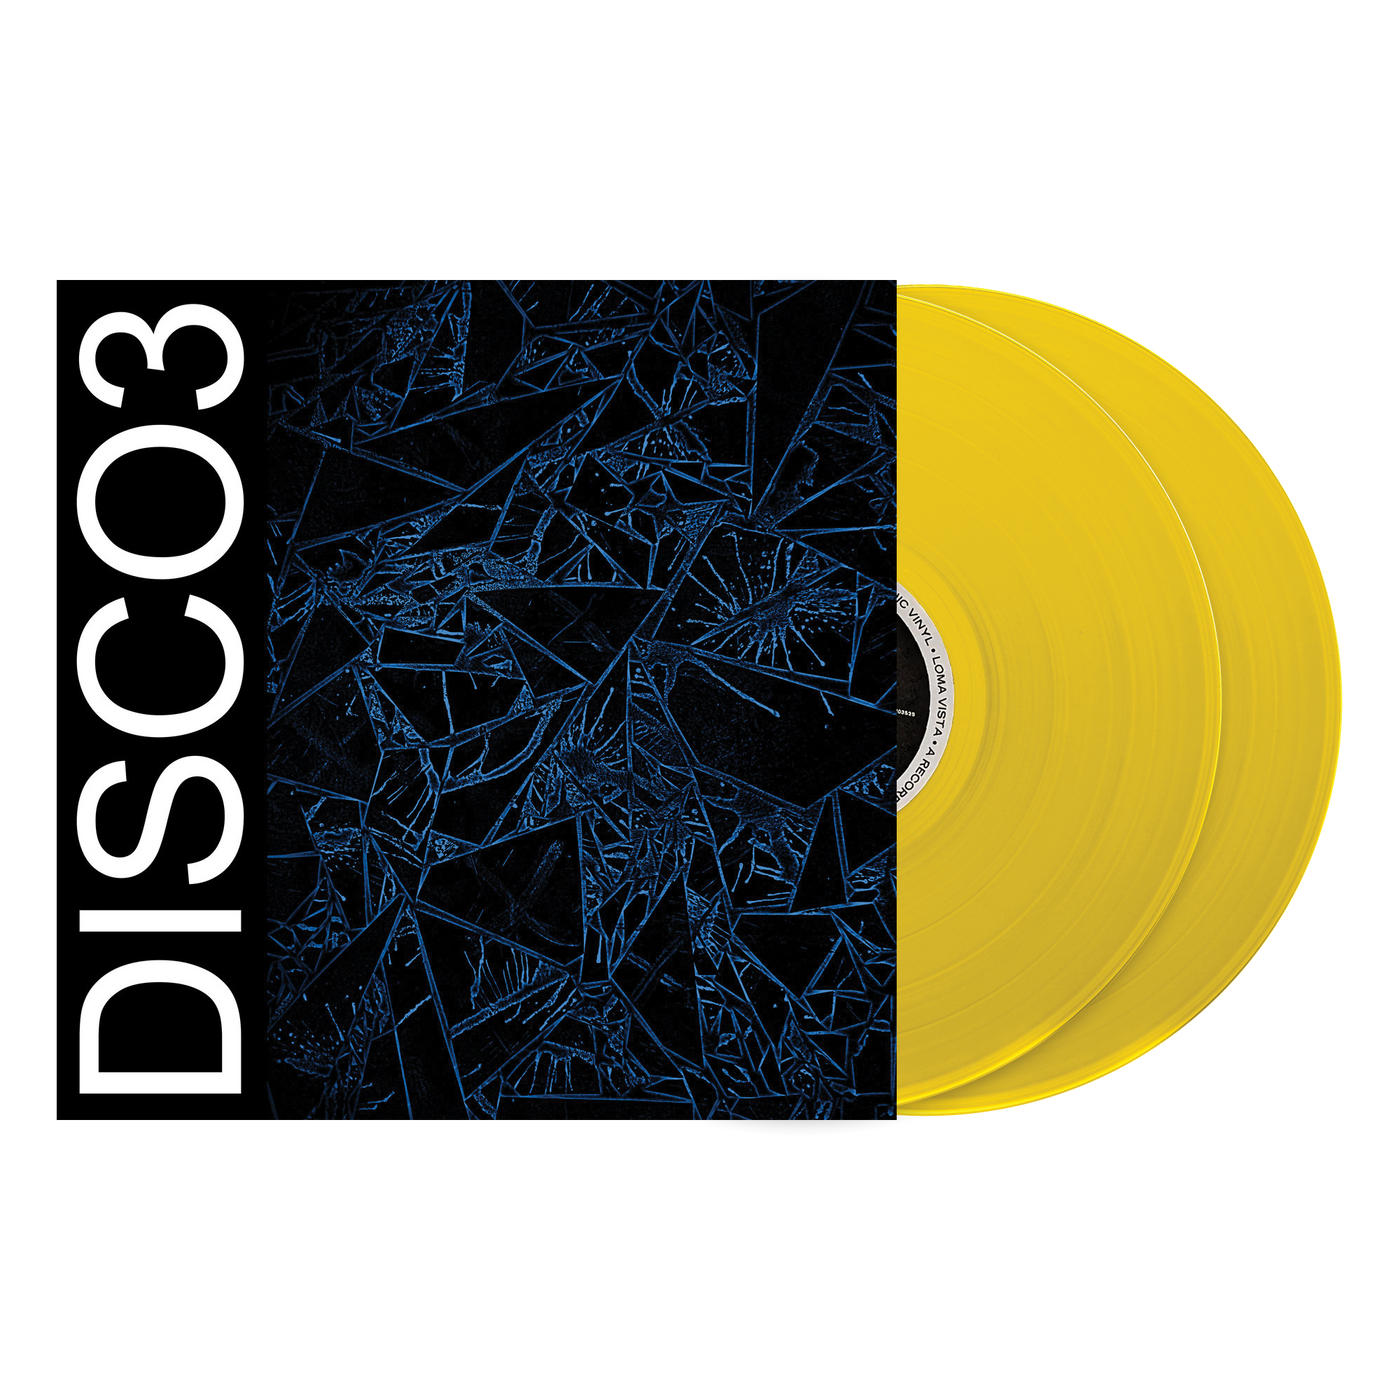 DISCO3 2 LP LIMITED EDITION REPRESS